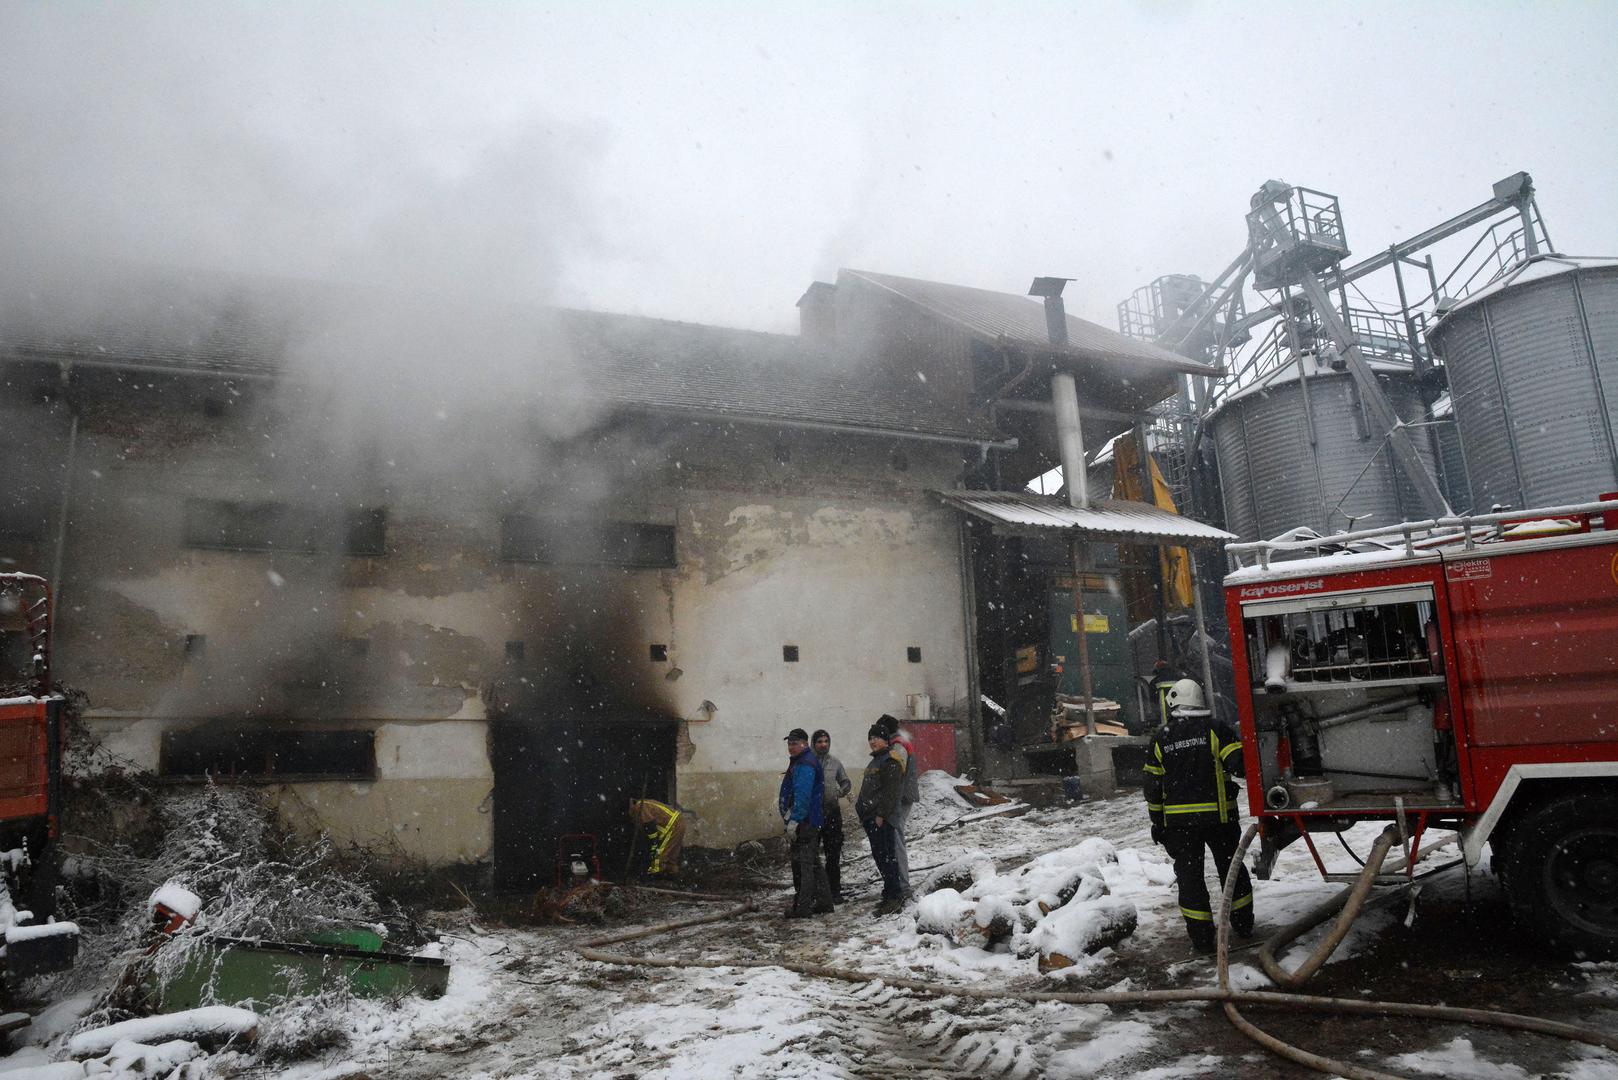 Iza 16 sati predsjednik DVD-a Brestovac Josip Ugrin izjavio Hini kako su vatrogasci još uvijek na požarištu.

